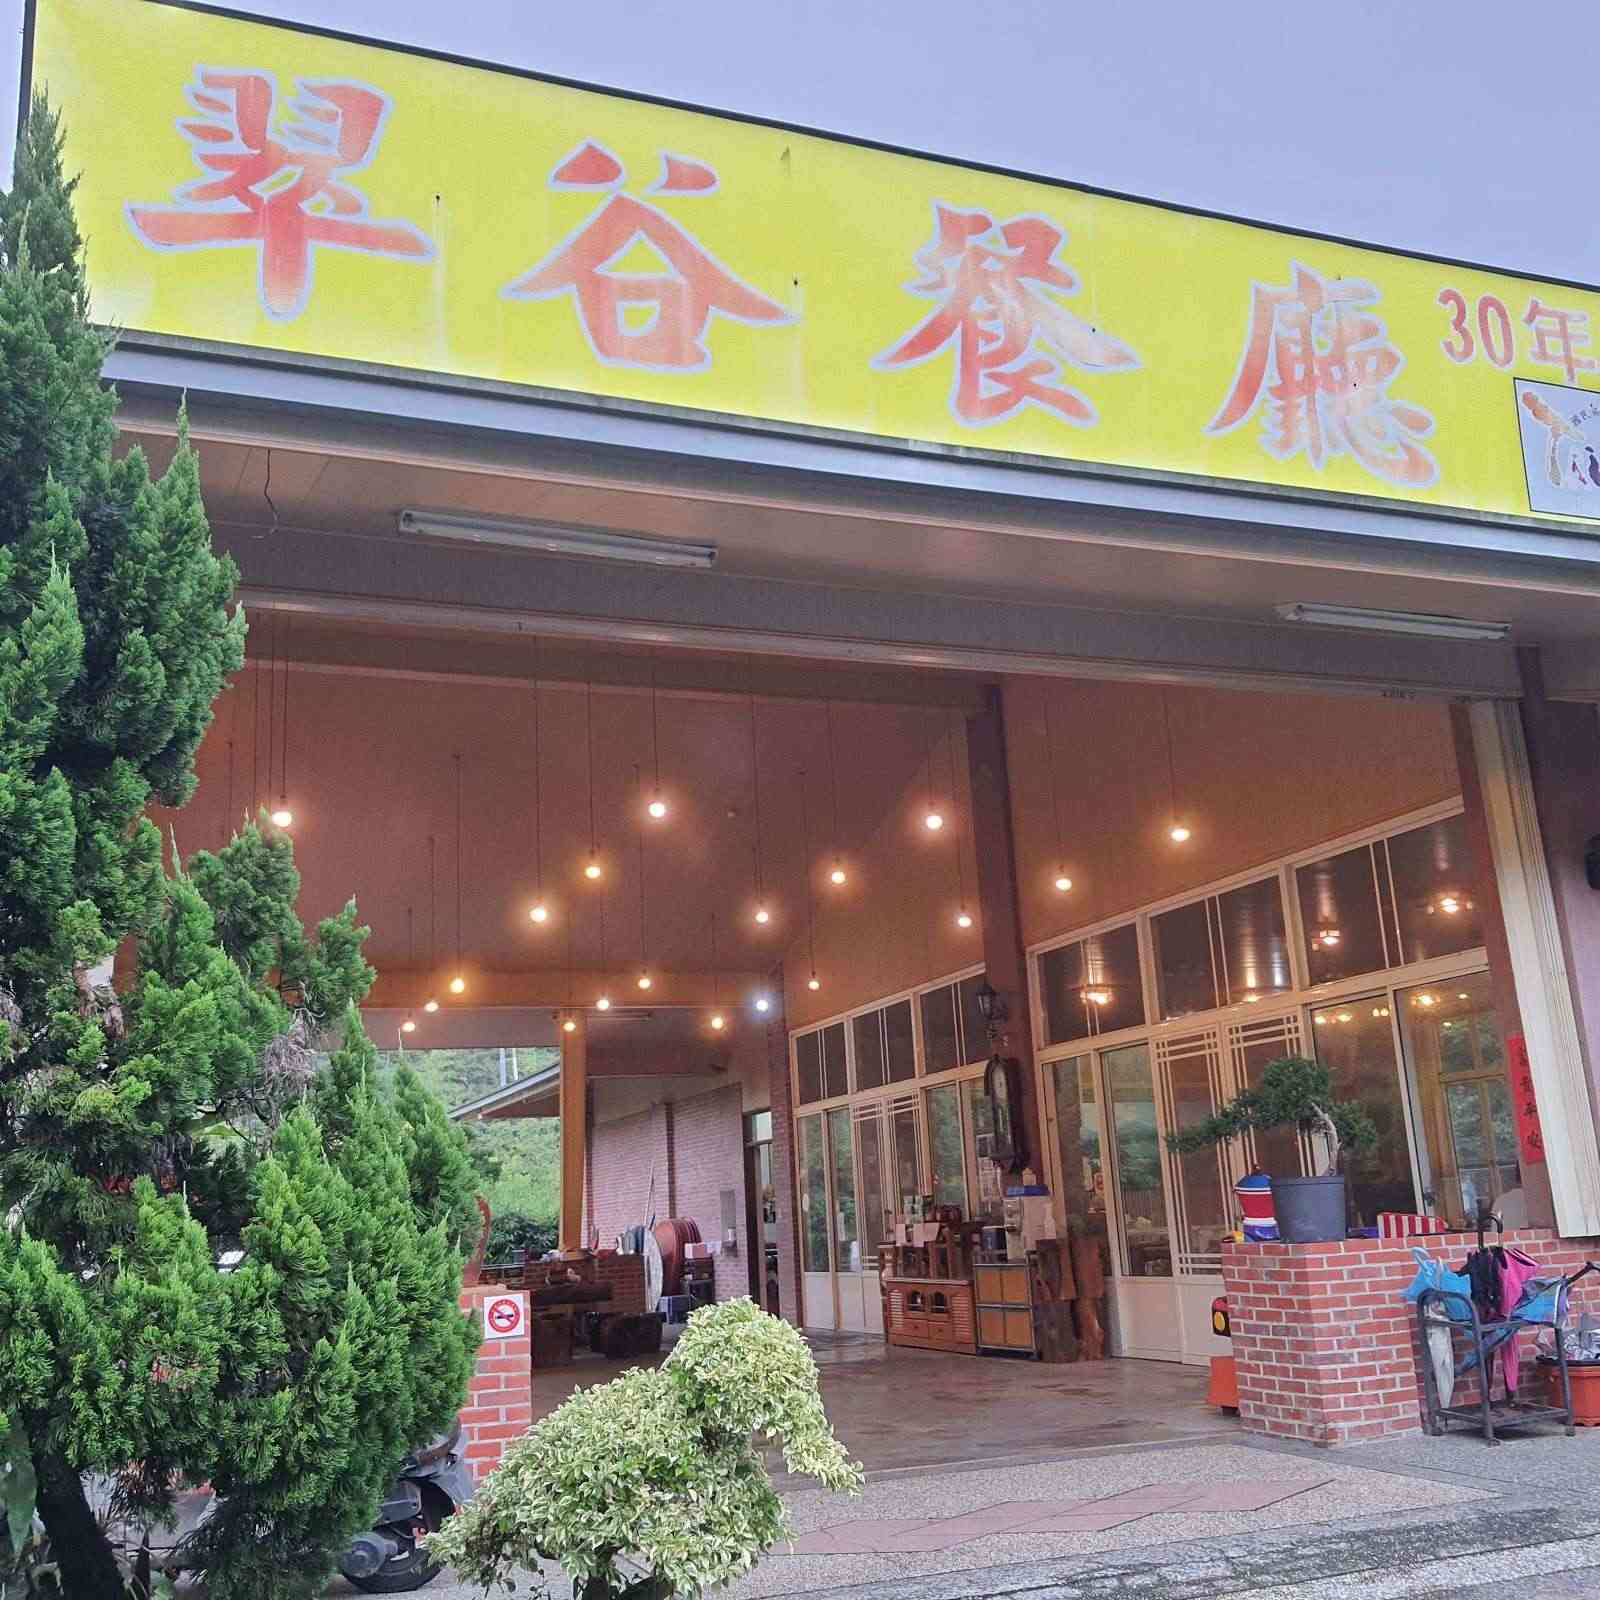 溪頭翠谷餐廳/ 攝影者: 劉品妤

(由第三方資訊提供)